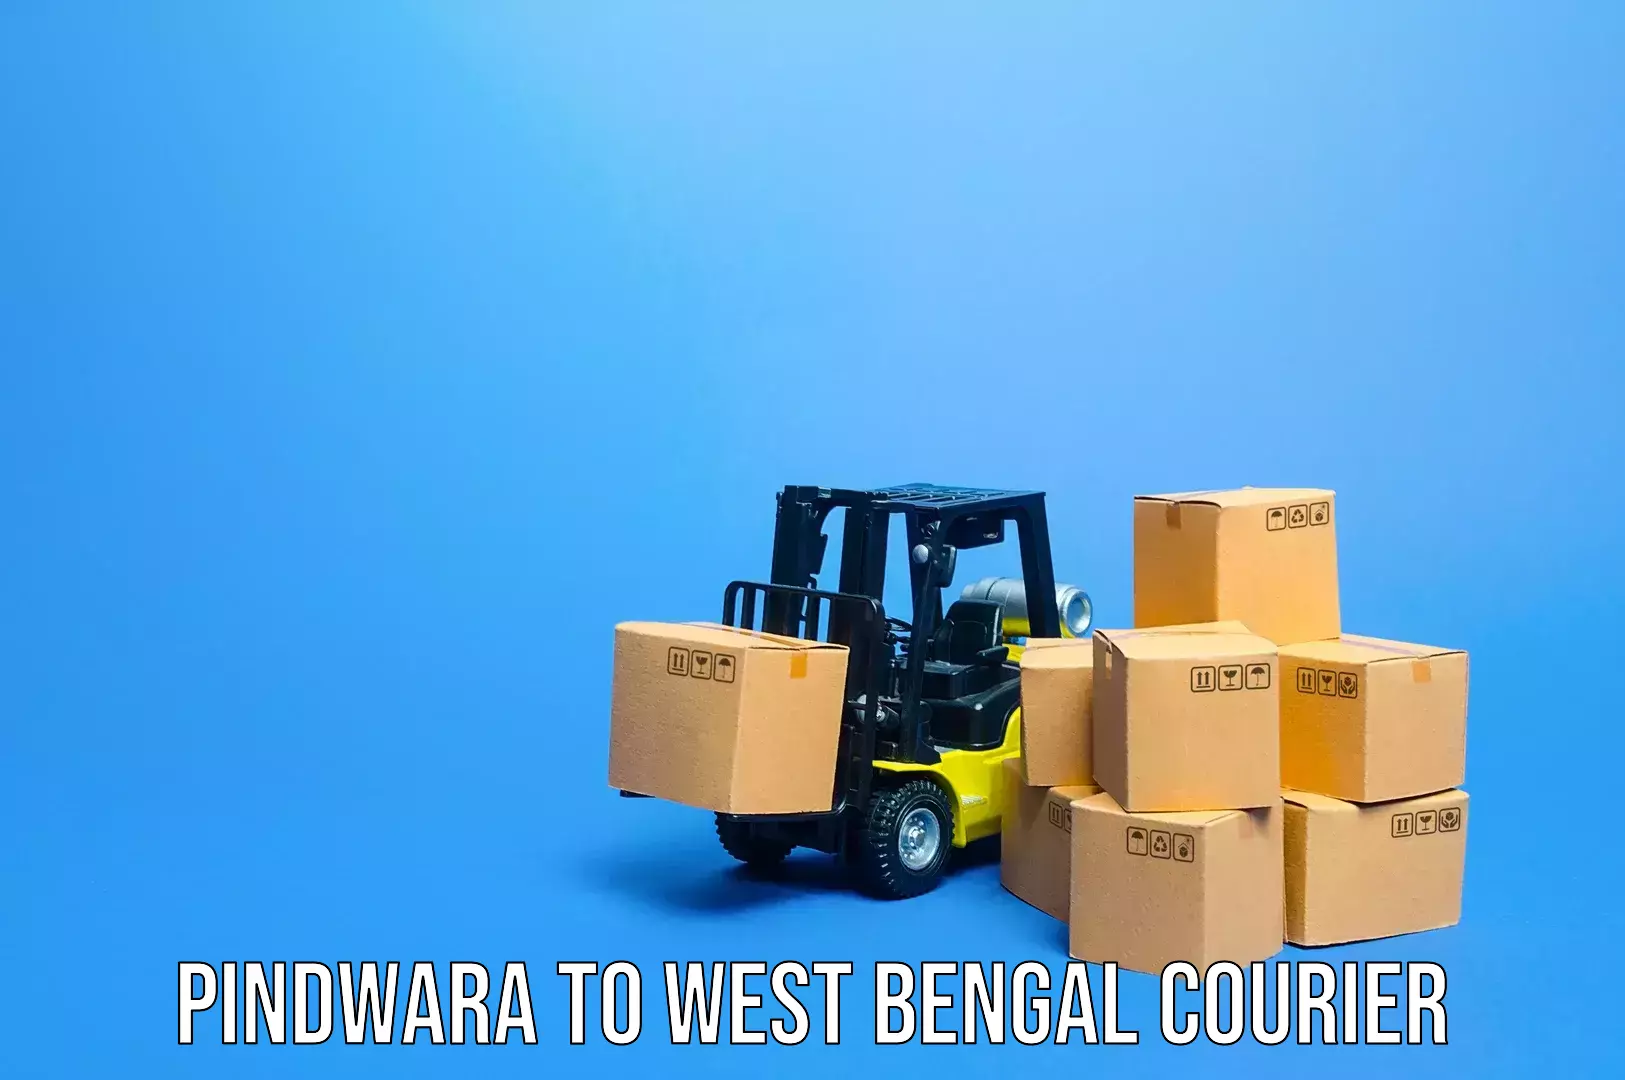 Luggage transfer service Pindwara to Algarah